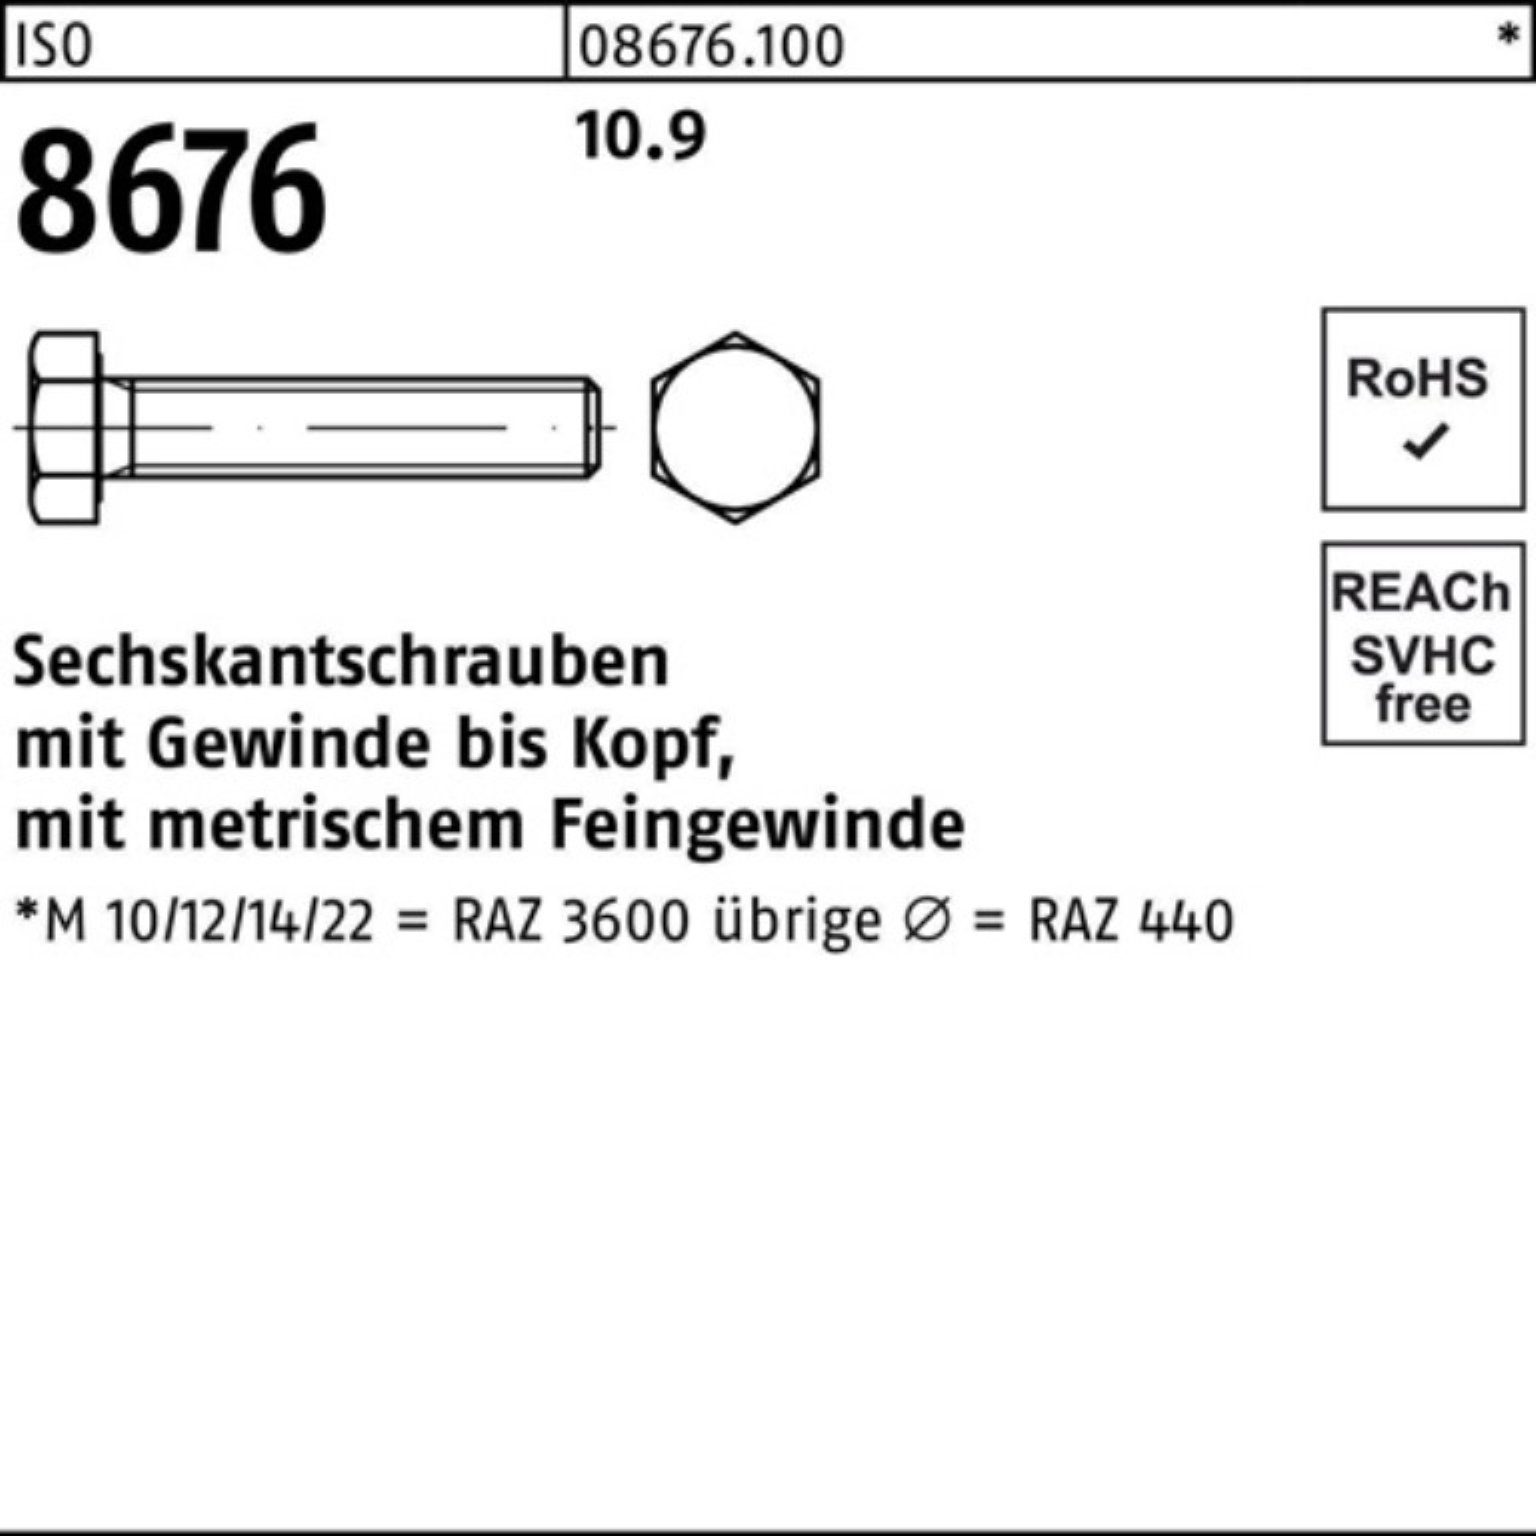 Reyher Sechskantschraube Stück 8676 10.9 100 100er Sechskantschraube M10x1,25x100 ISO VG Pack